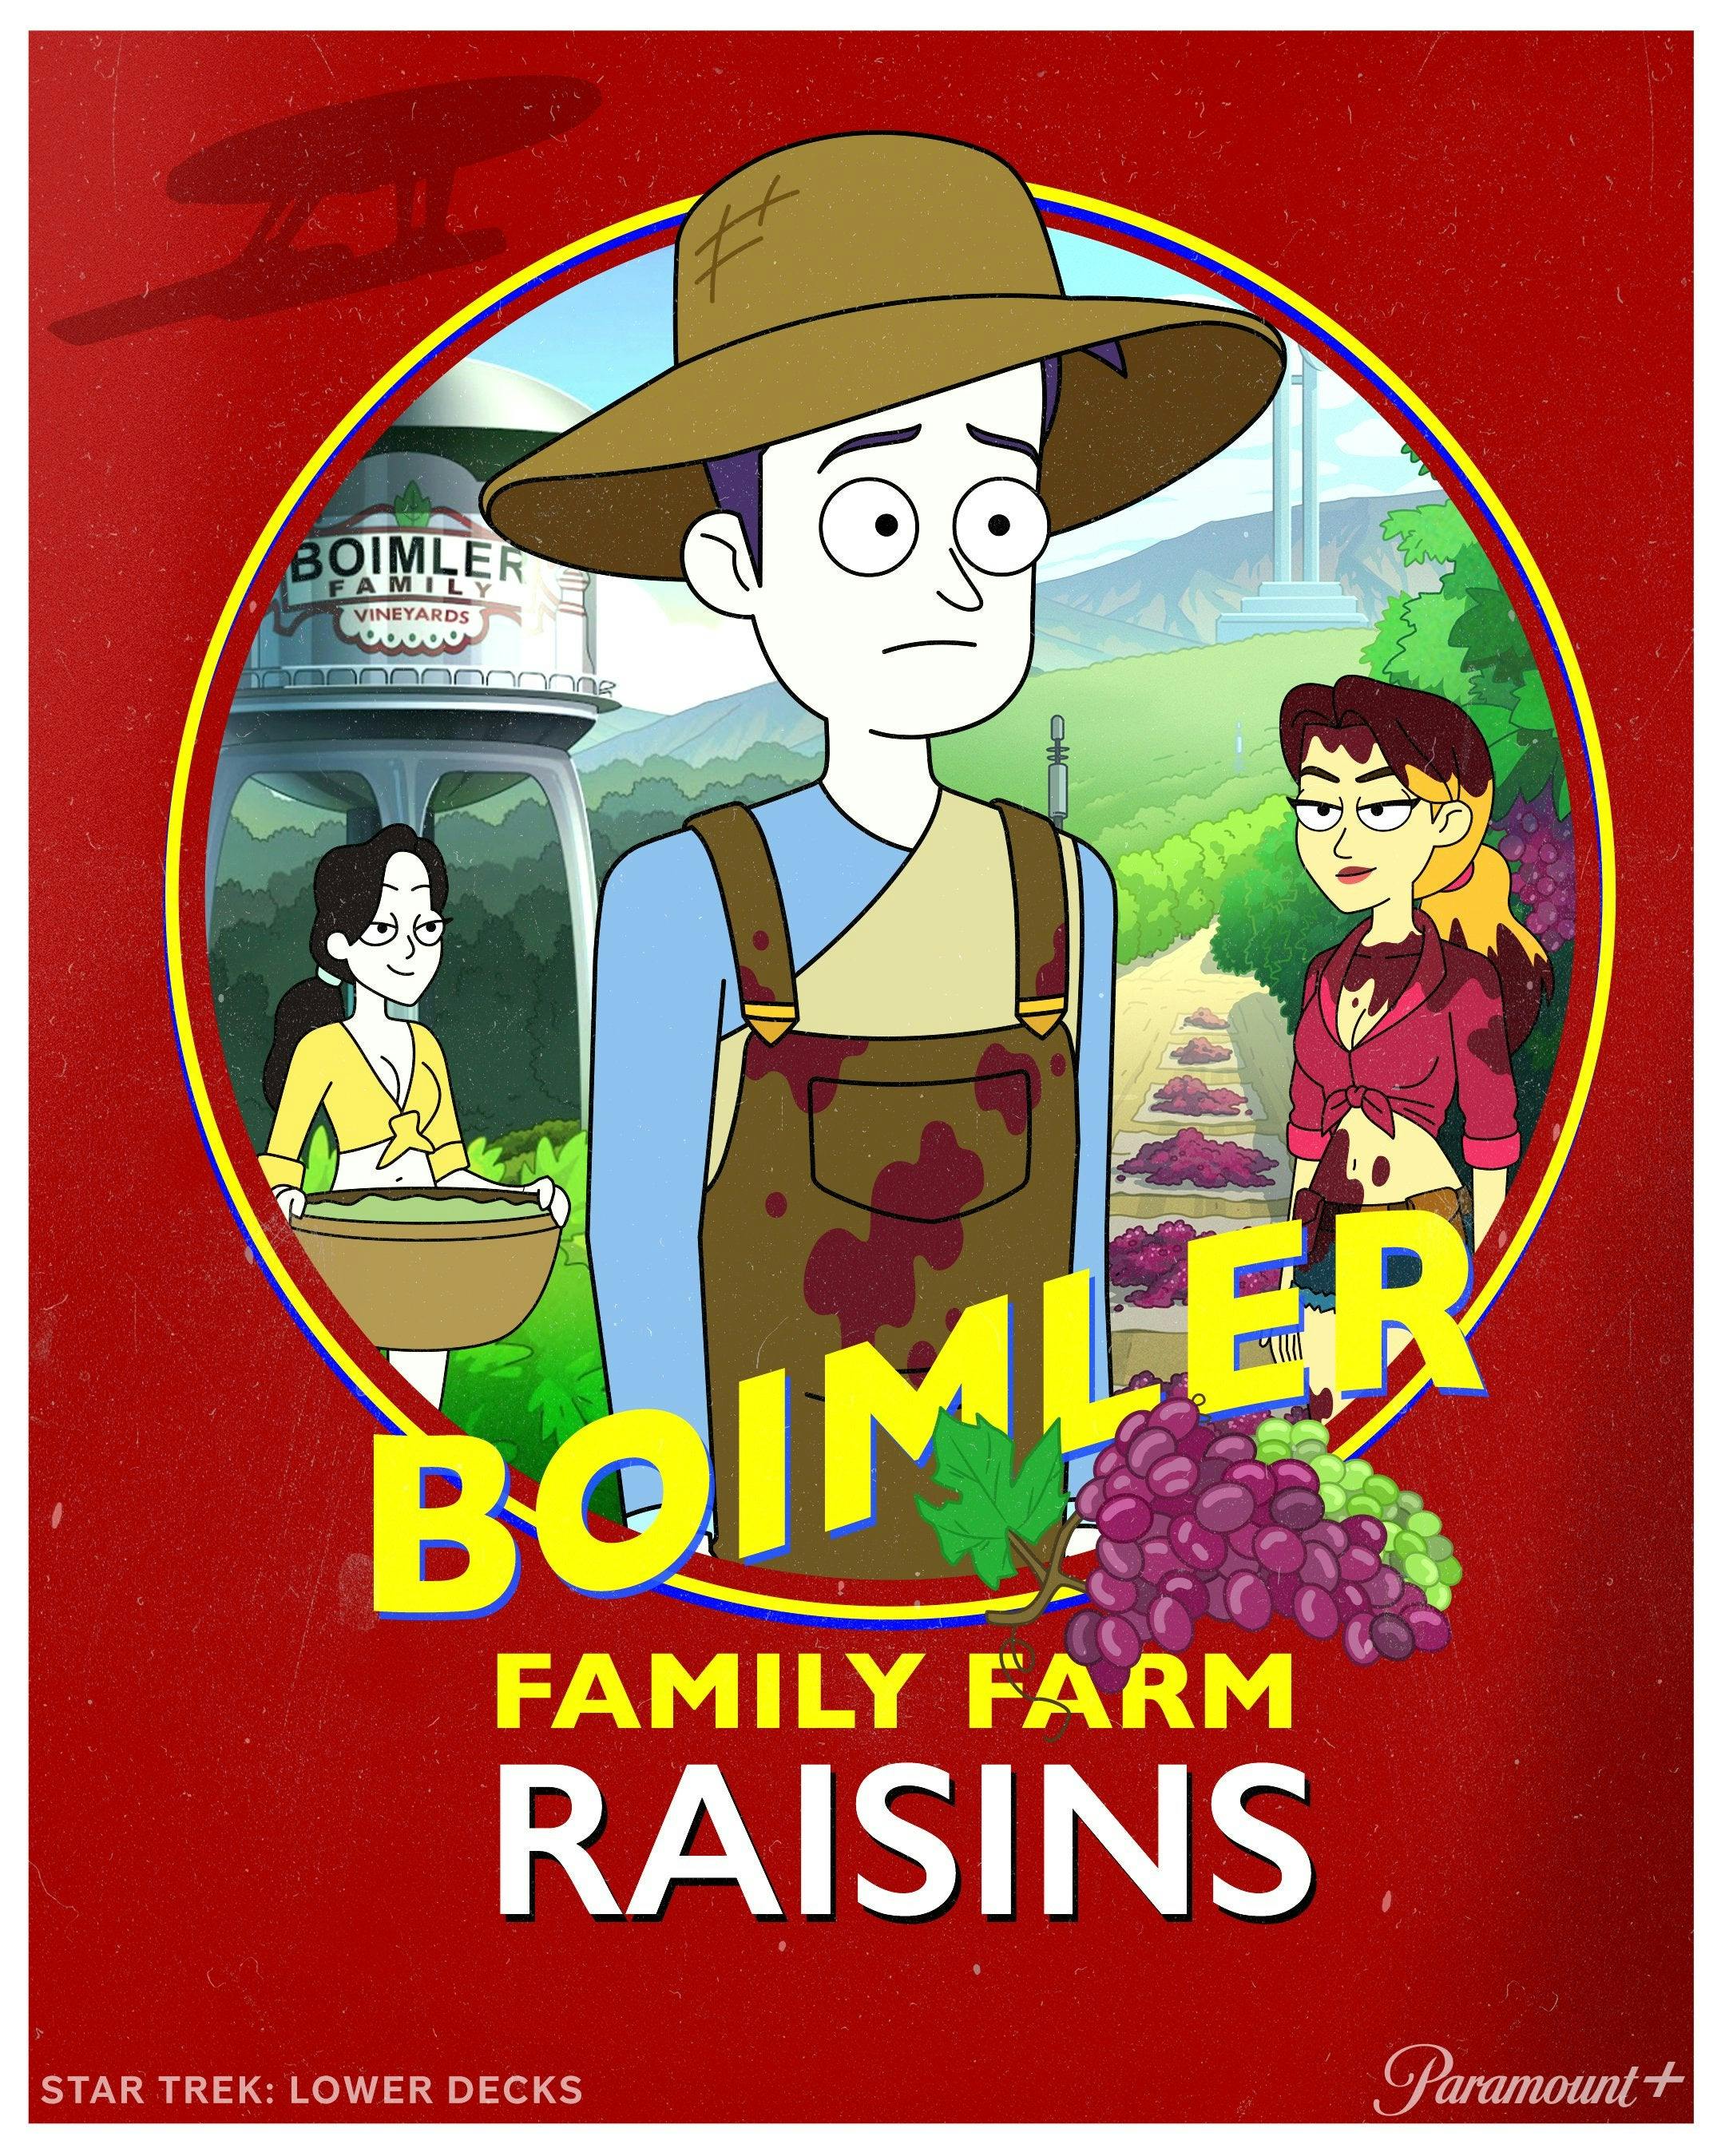 Illustrated ad for Boimler Family Farm Raisins